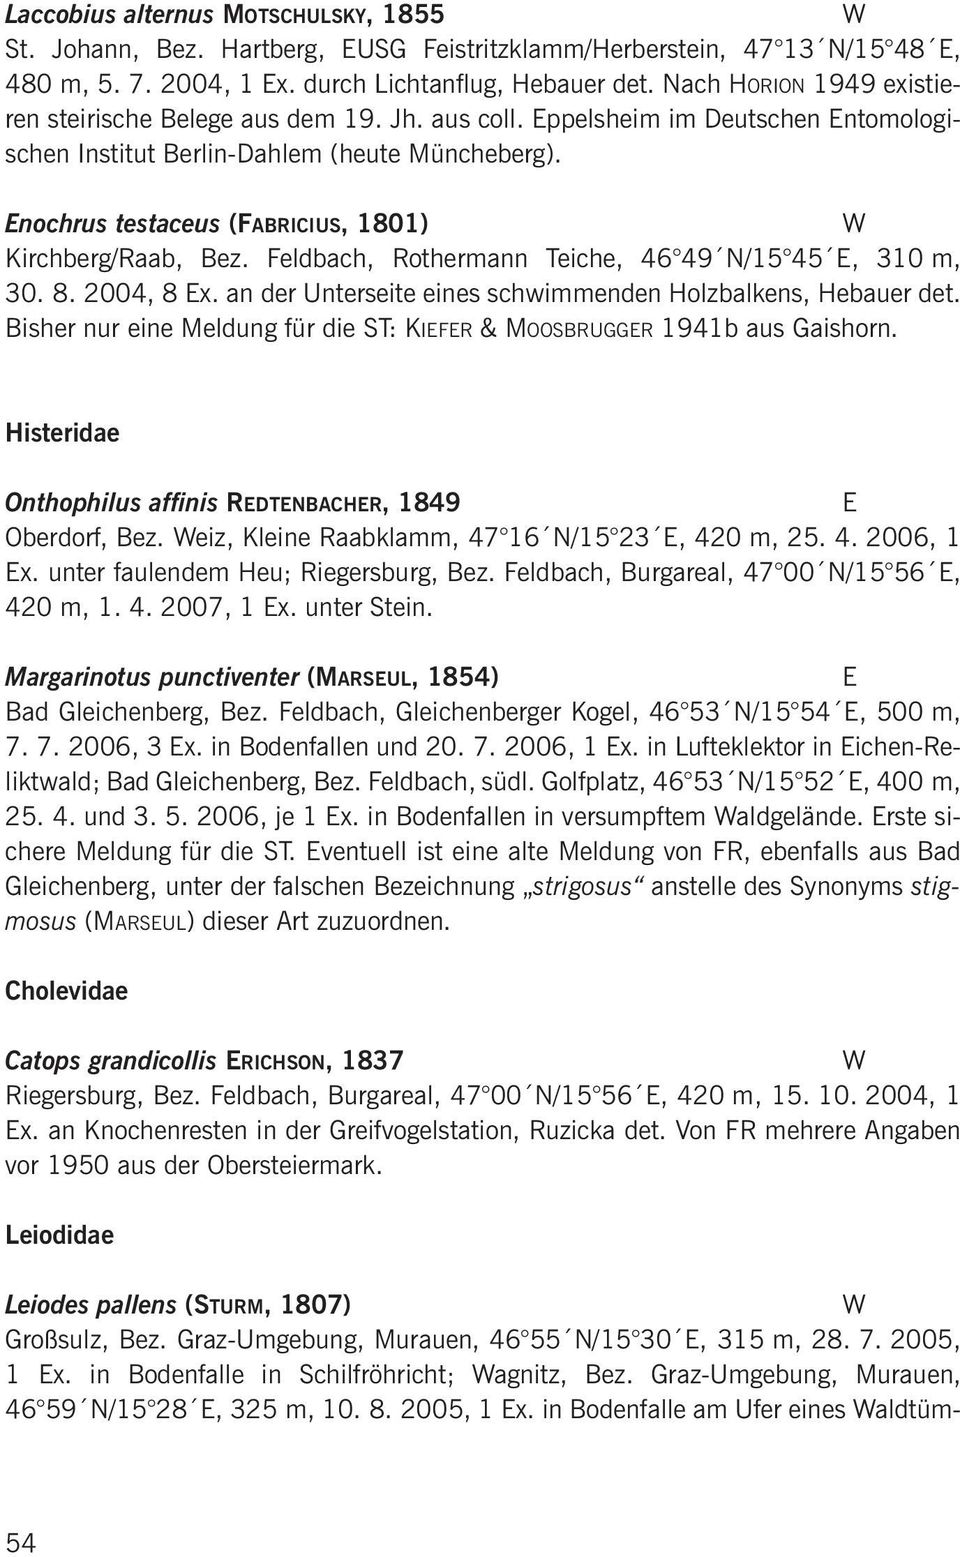 nochrus testaceus (FABRICIUS, 1801) Kirchberg/Raab, Bez. Feldbach, Rothermann Teiche, 46 49 N/15 45, 310 m, 30. 8. 2004, 8 x. an der Unterseite eines schwimmenden Holzbalkens, Hebauer det.